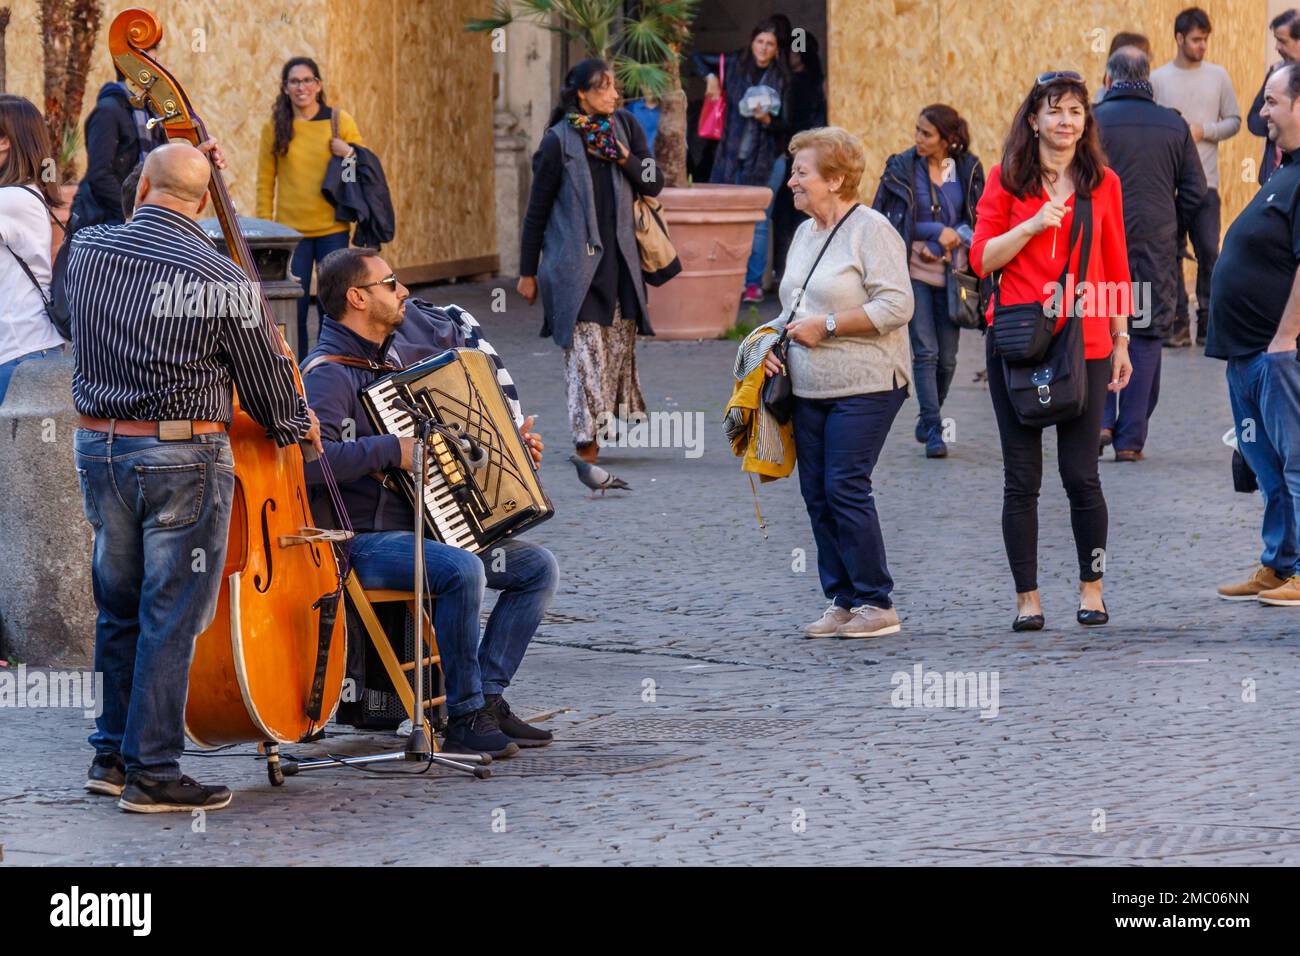 Une vieille femme danse avec la musique d'un groupe de rue sur la Piazza di Santa Maria, Rome. Banque D'Images